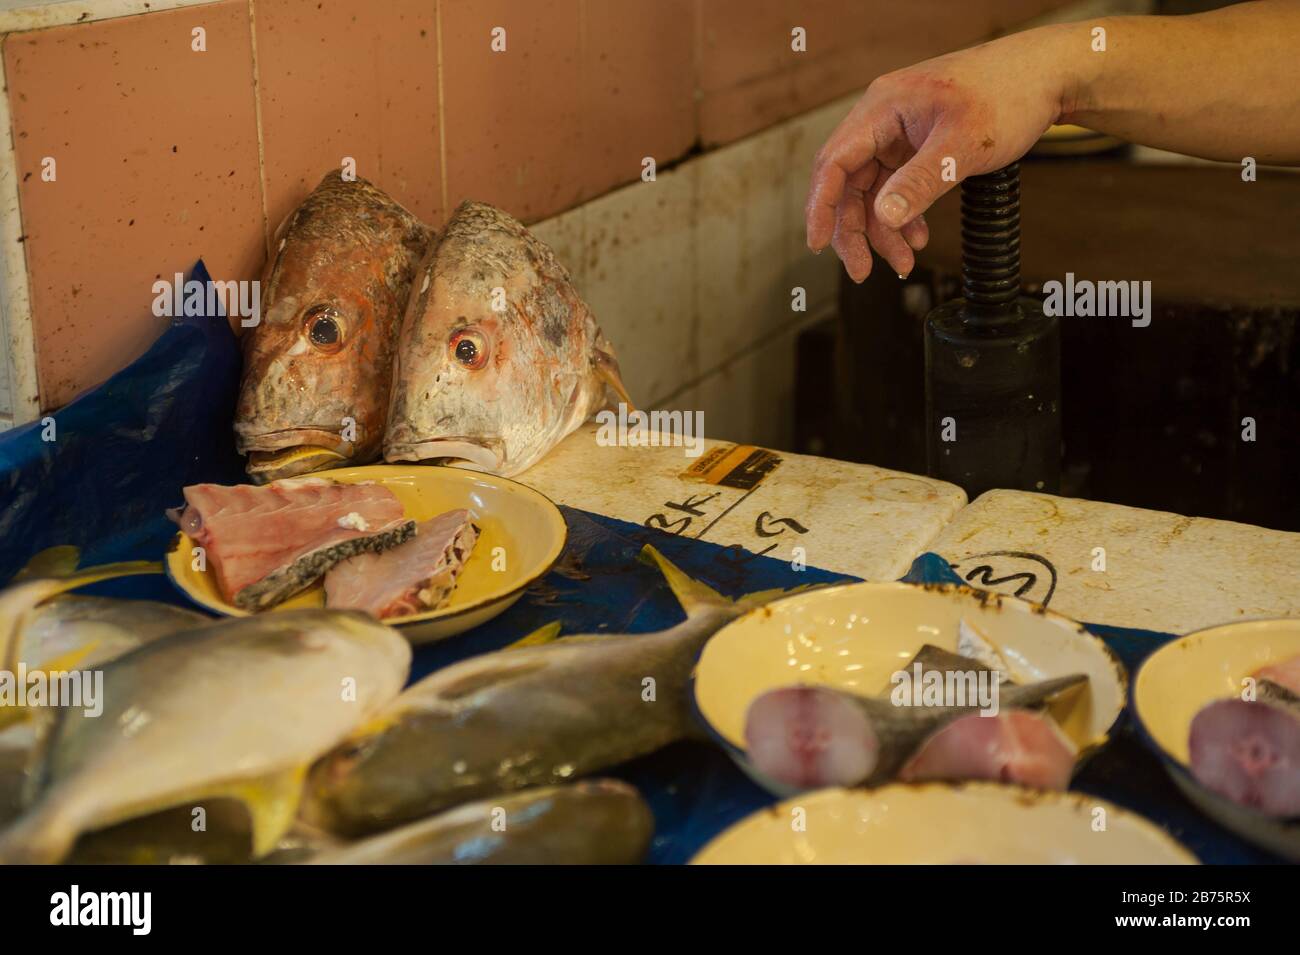 27.07.2017, Singapour, République de Singapour, Asie - le stand d'un vendeur de poissons sur le marché de Chinatown. [traduction automatique] Banque D'Images